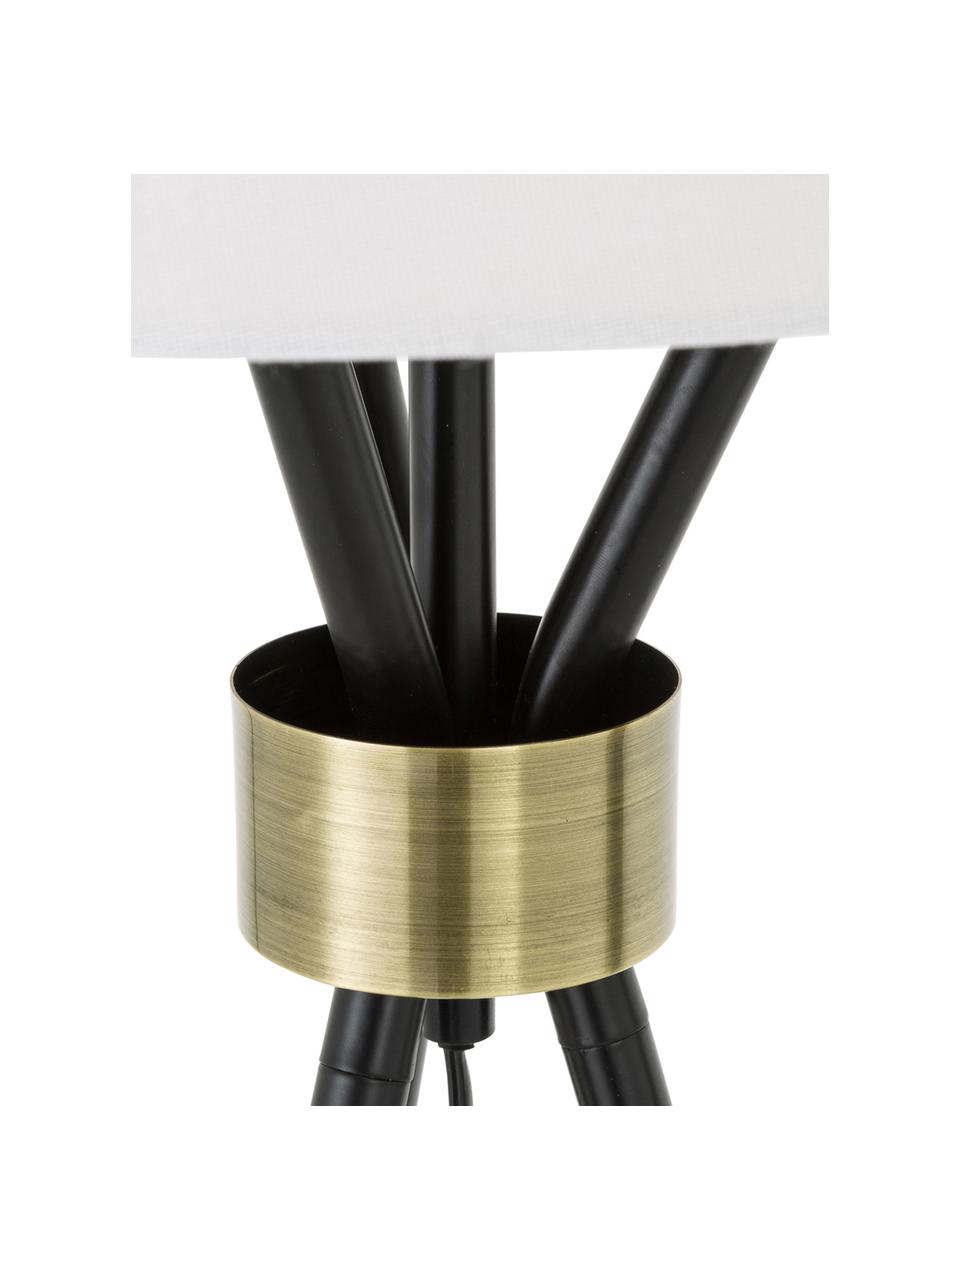 Große Tripod Tischlampe Tribeca, Lampenschirm: Leinen, Lampenfuß: Metall, lackiert, Dekor: Messing, Weiß, Schwarz, Ø 40 x H 67 cm